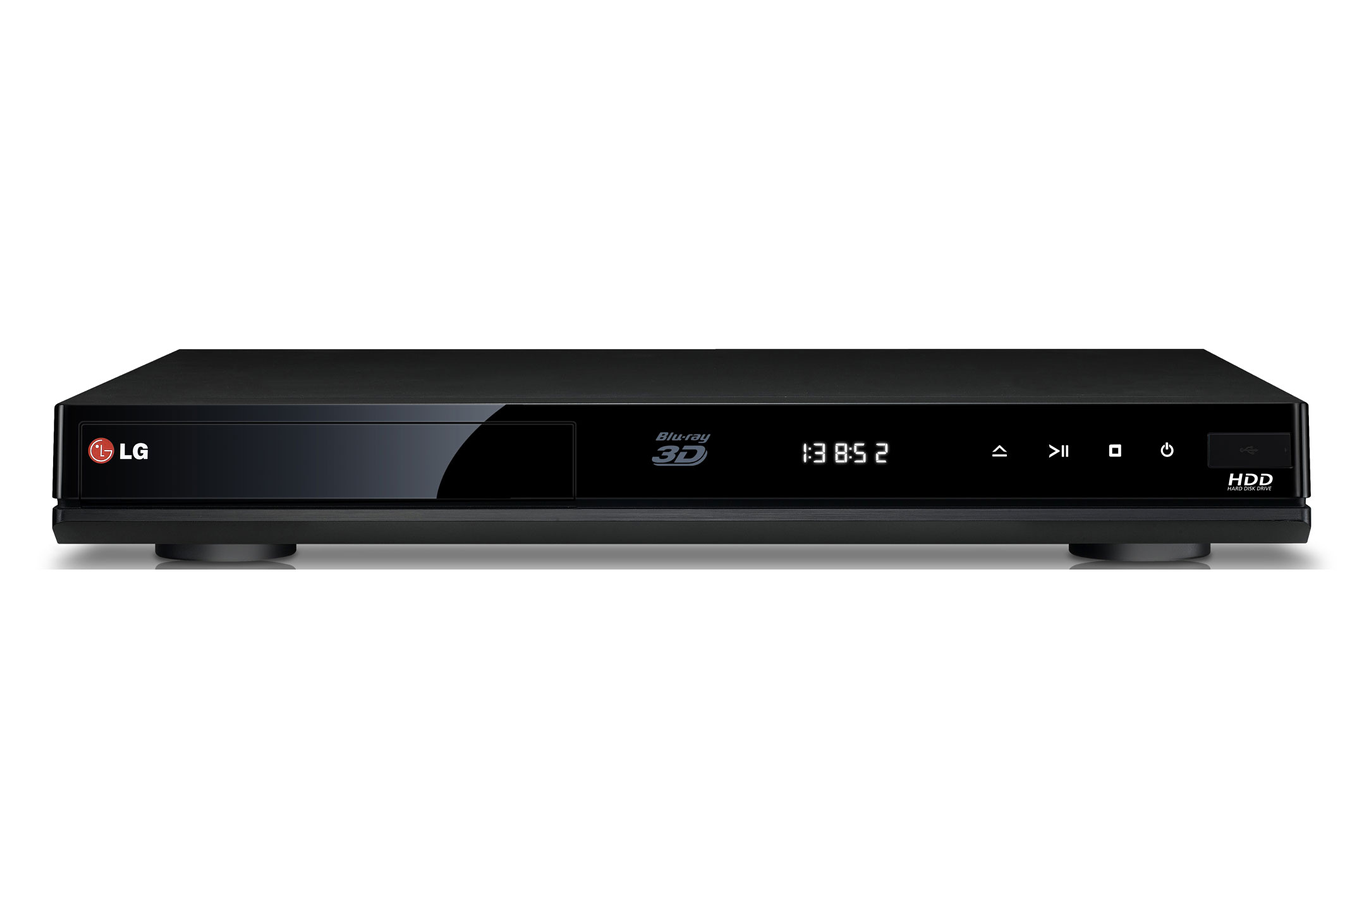 Equipé d'un double tuner TNT HD, le LG HR932D permet de visionner et